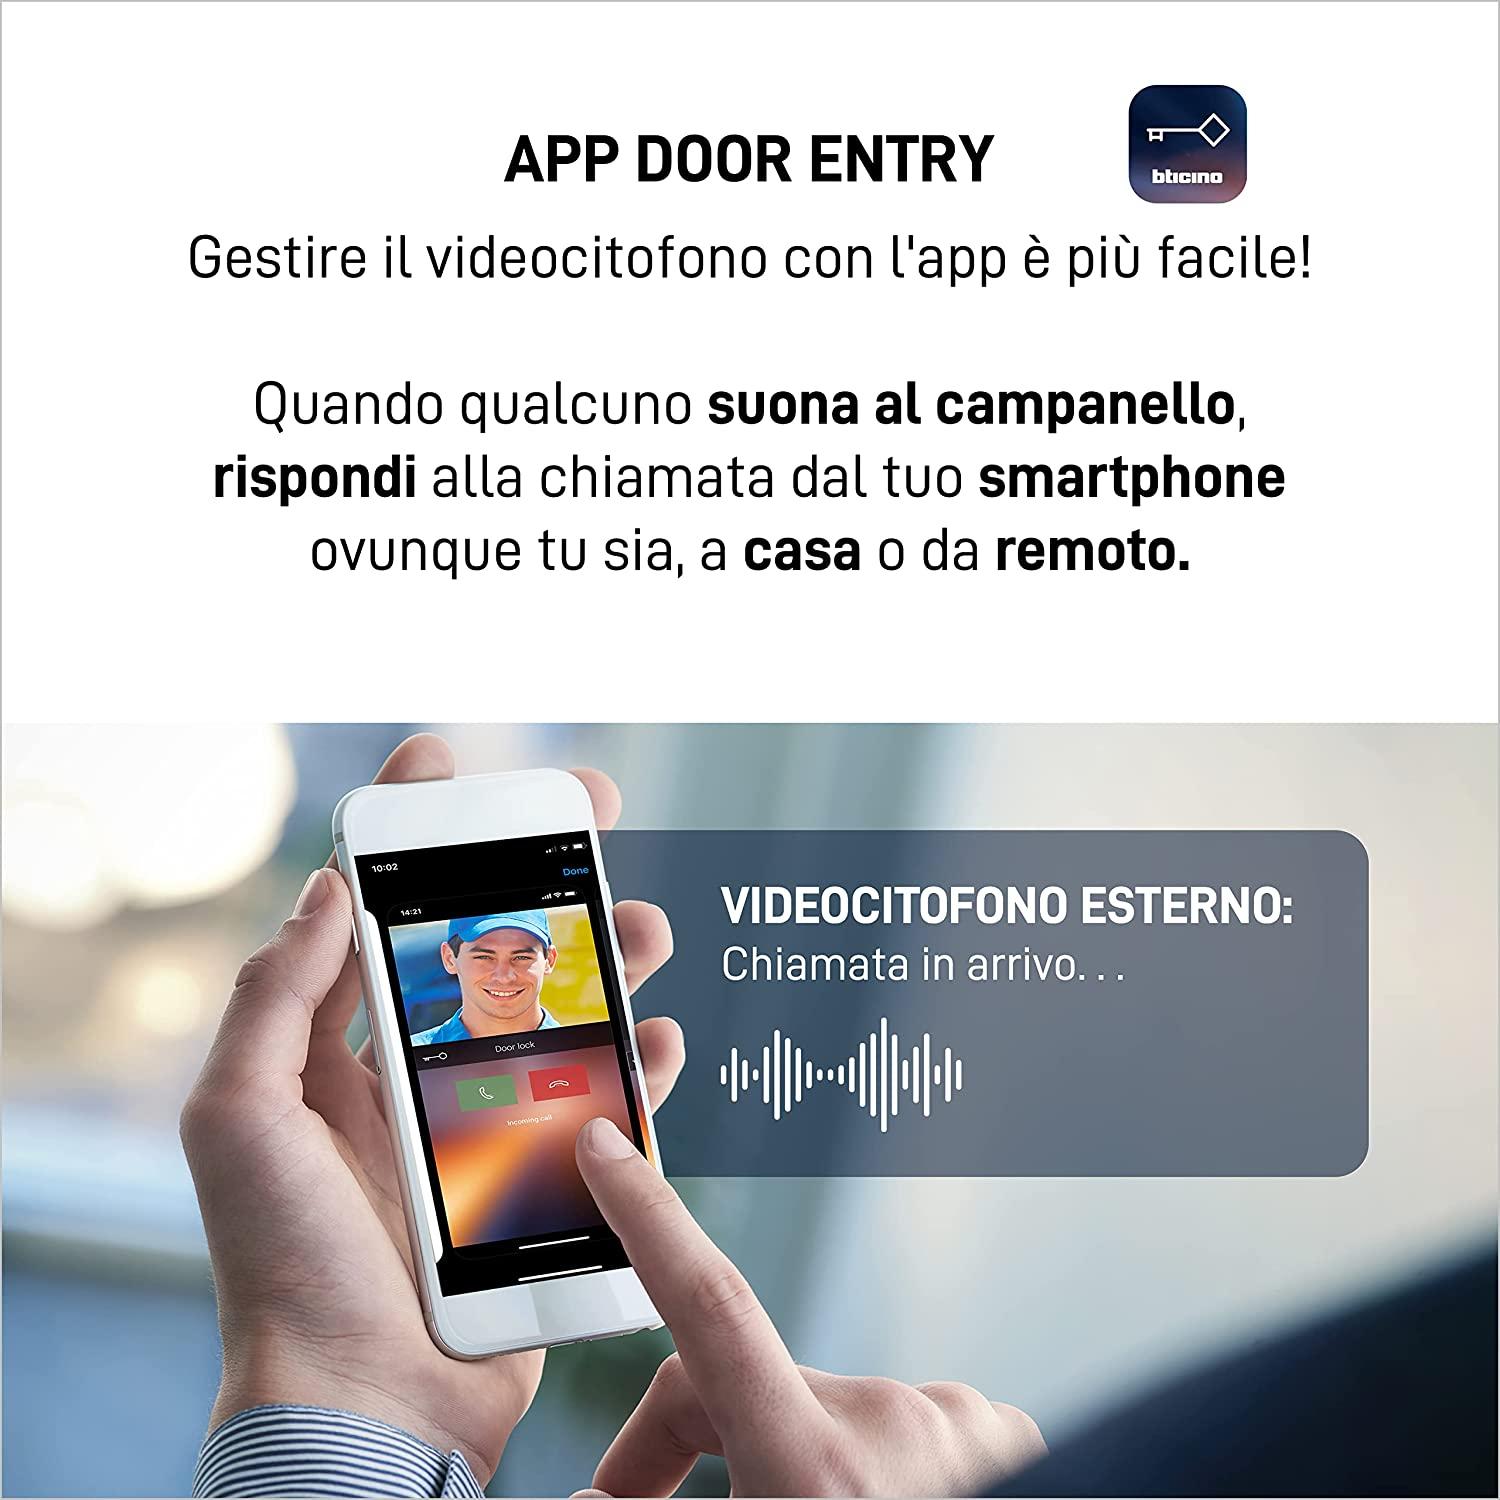 Controllo videocitofono con app